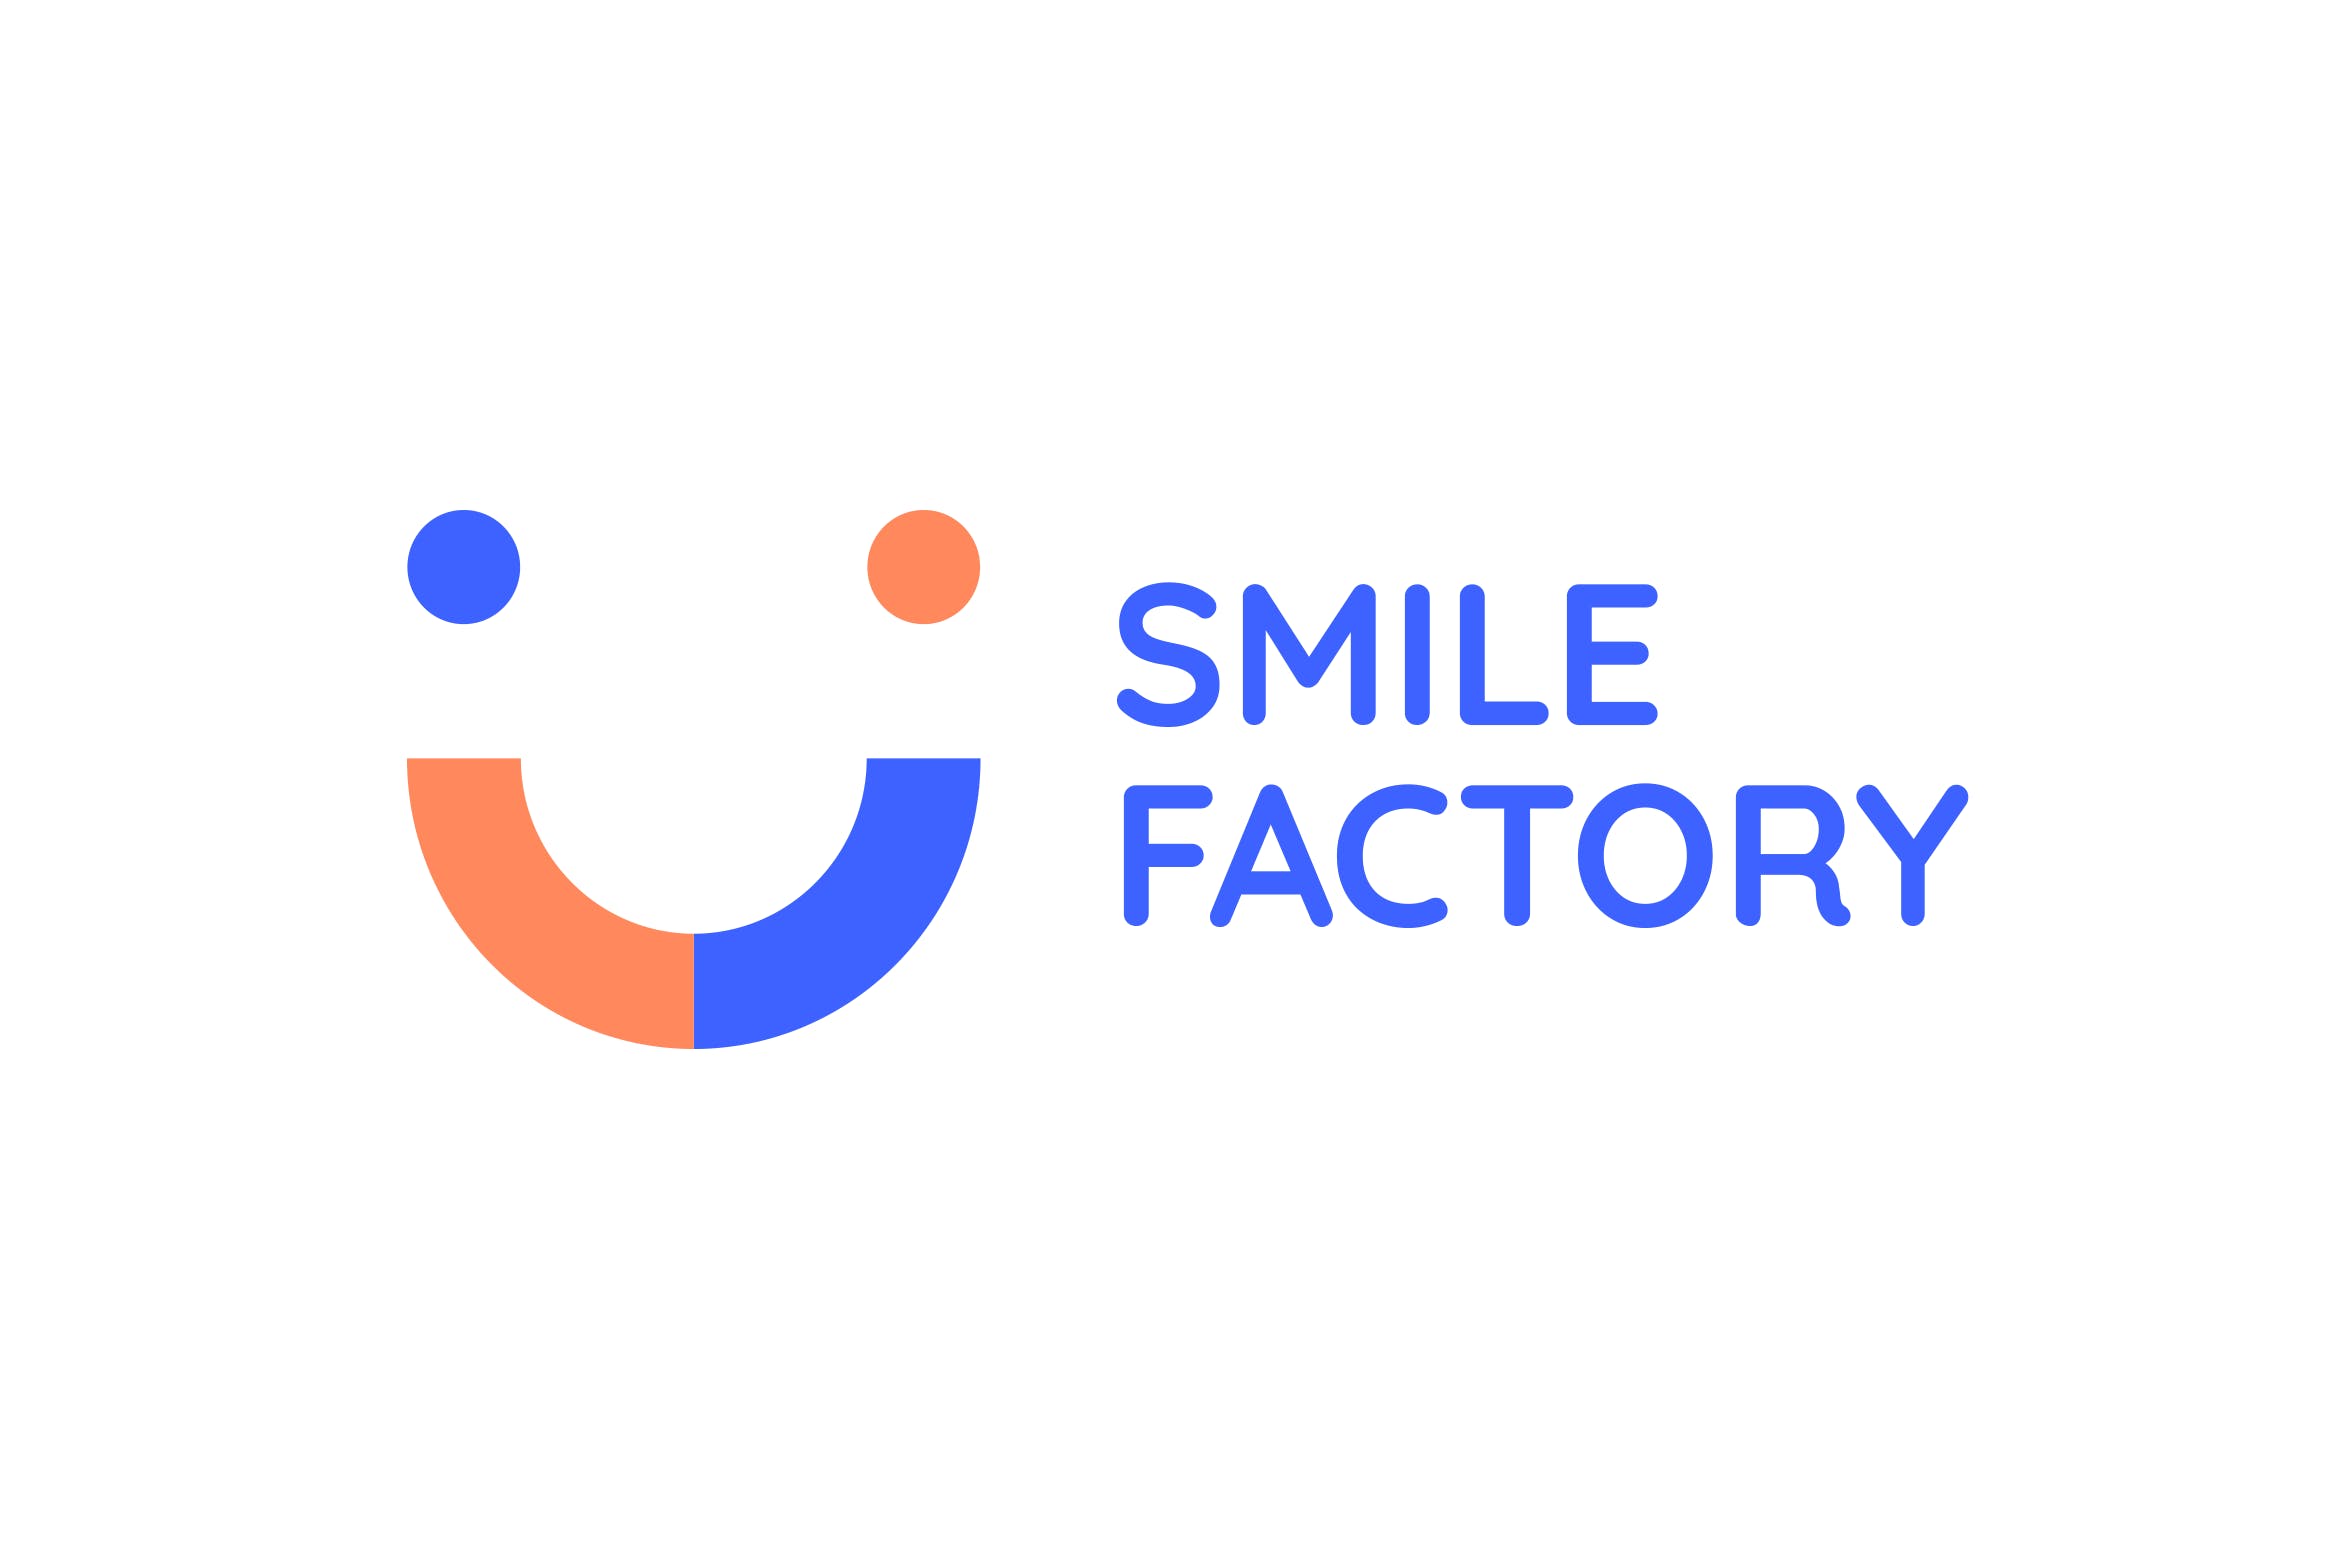 笑脸几何图形Logo设计素材库精选模板 Smile Factory Logo插图